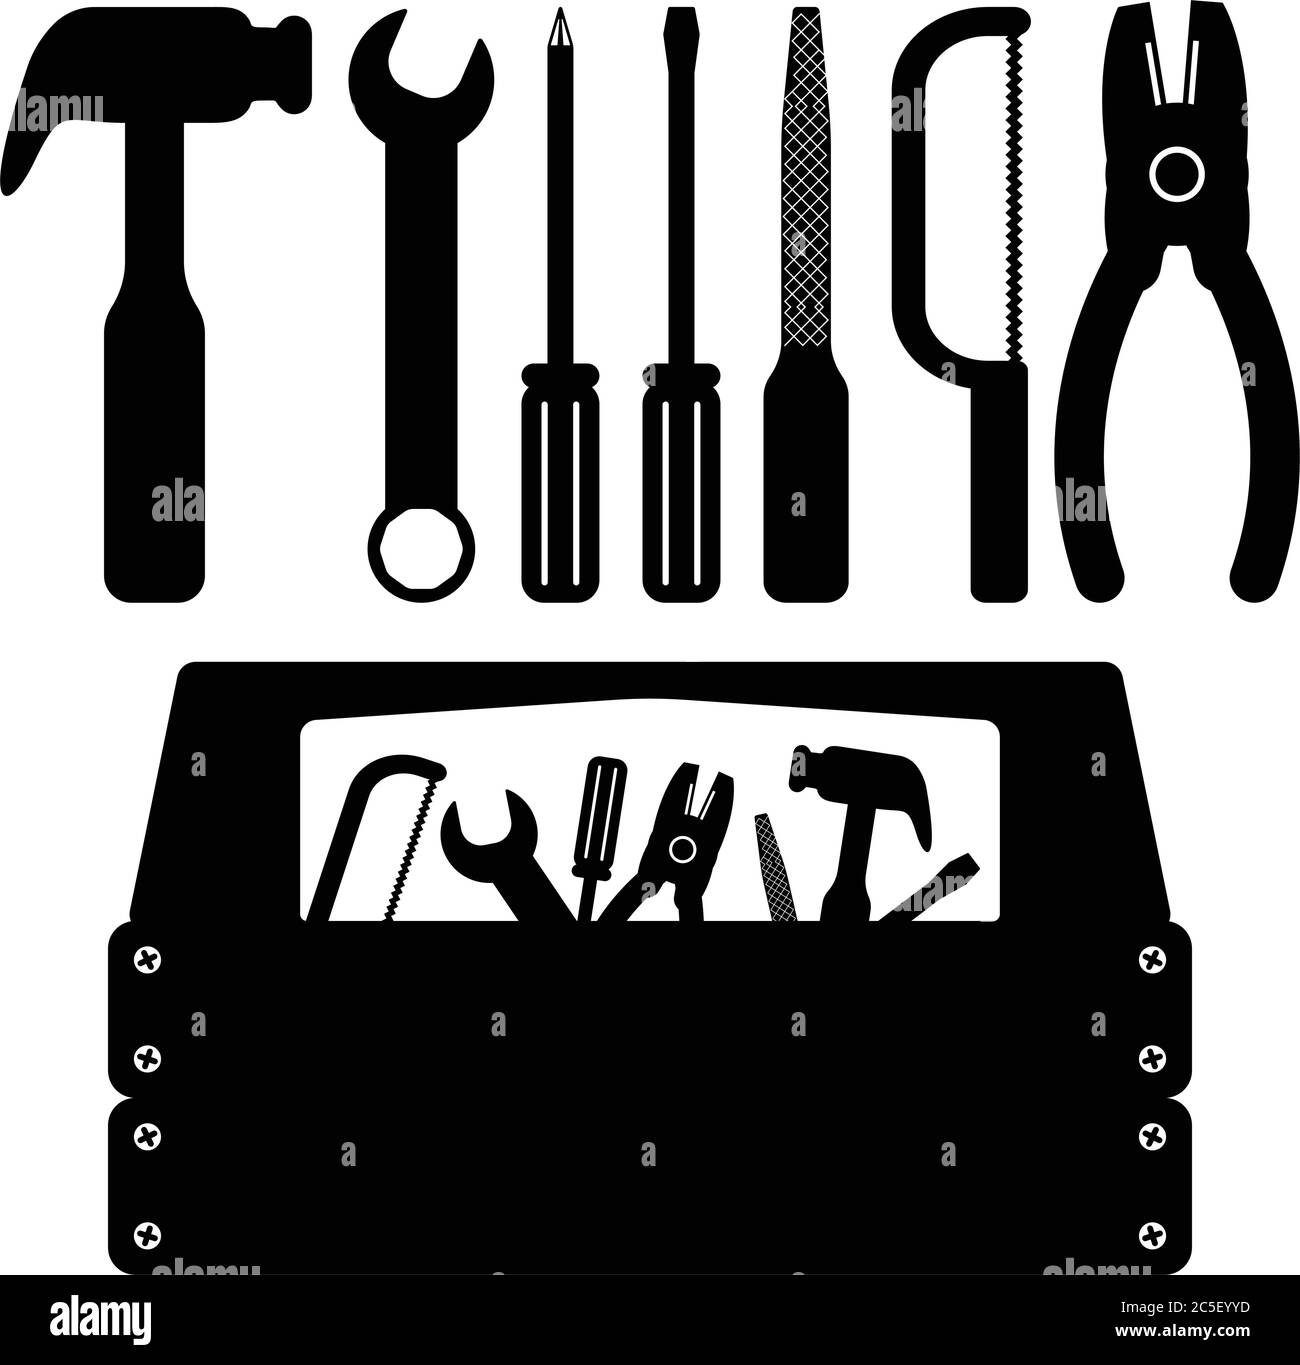 Werkzeuge Schwarze Sägeschrauber Hammer Schraubendreher Icon Set Handyman Services Toolbox Vektor-Illustration Stock Vektor